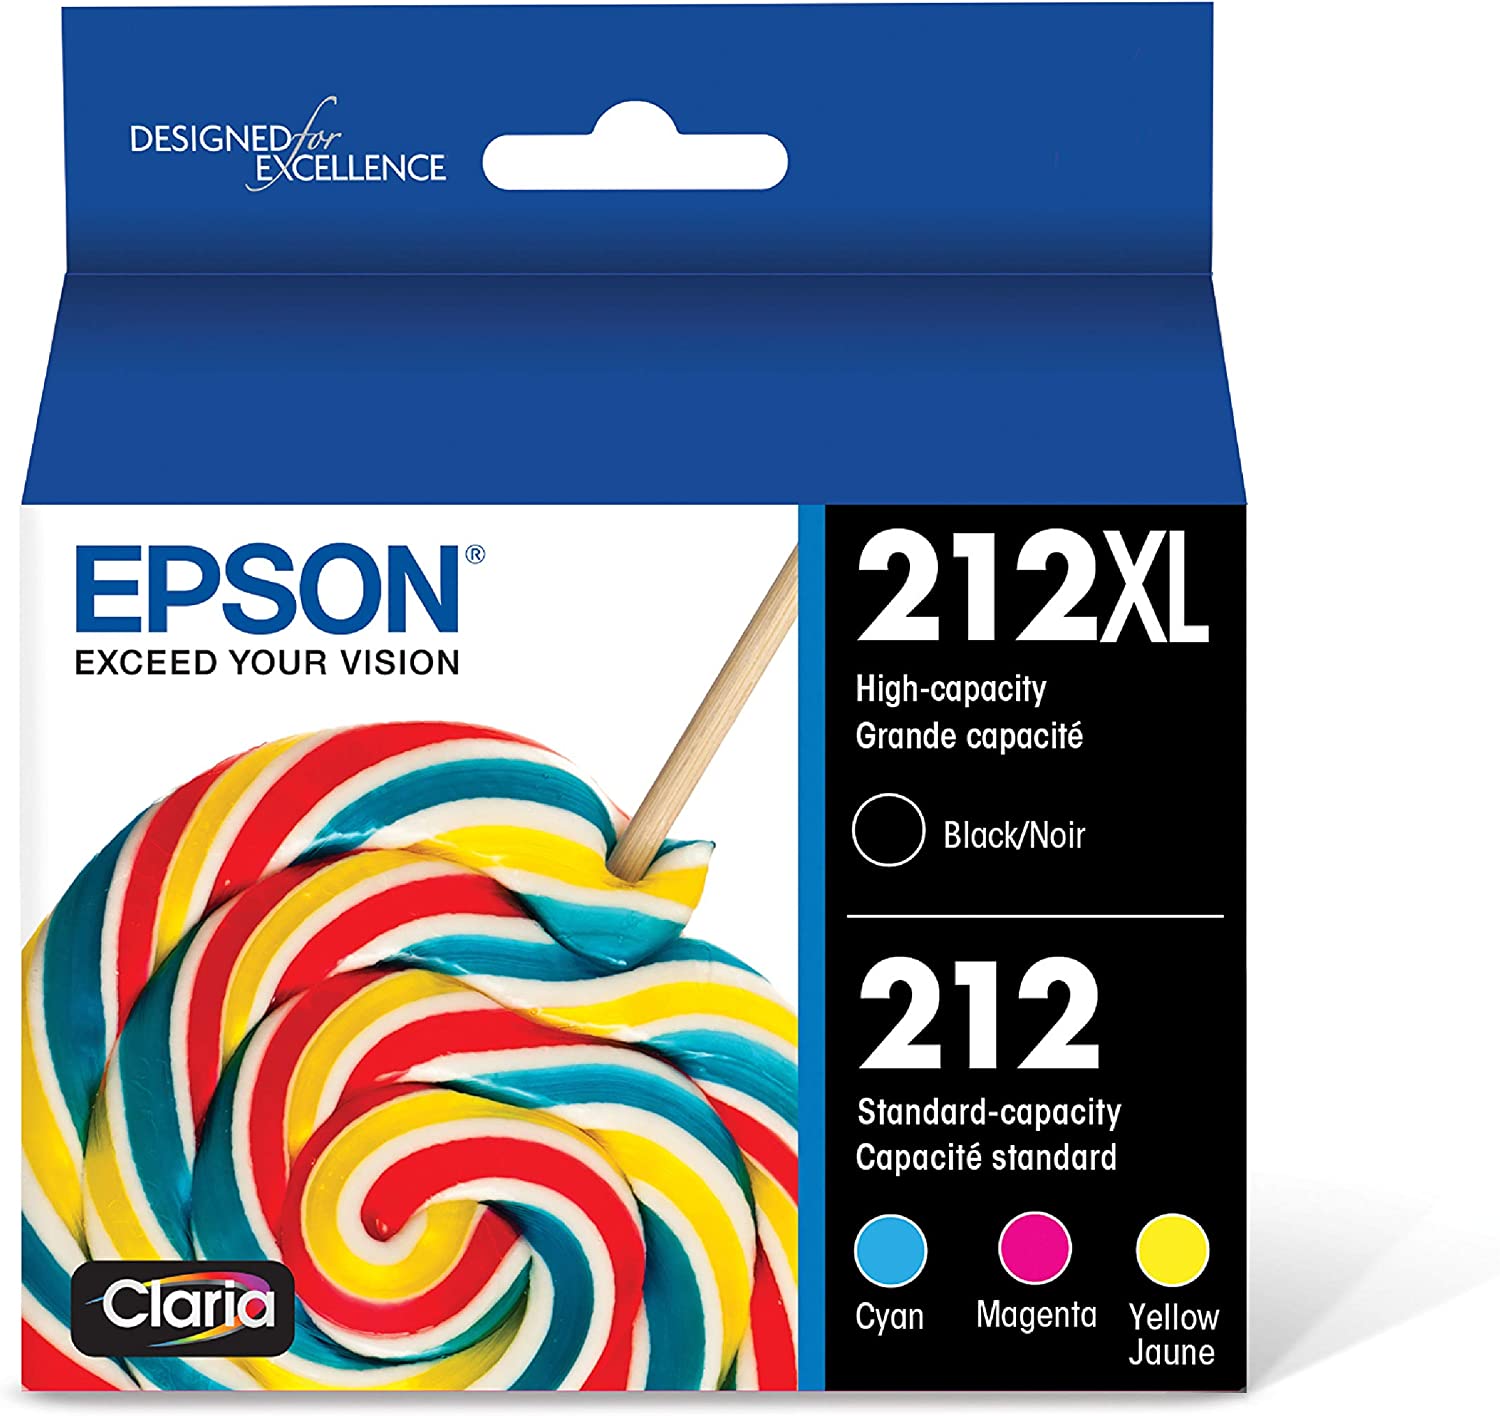 EPSON T212 Claria - 잉크 대용량 블랙 스탠다드 컬러 엡손 익스프레션 및 워크포스 프린터 위한 카트리지 콤보 팩 T212XL-BCS